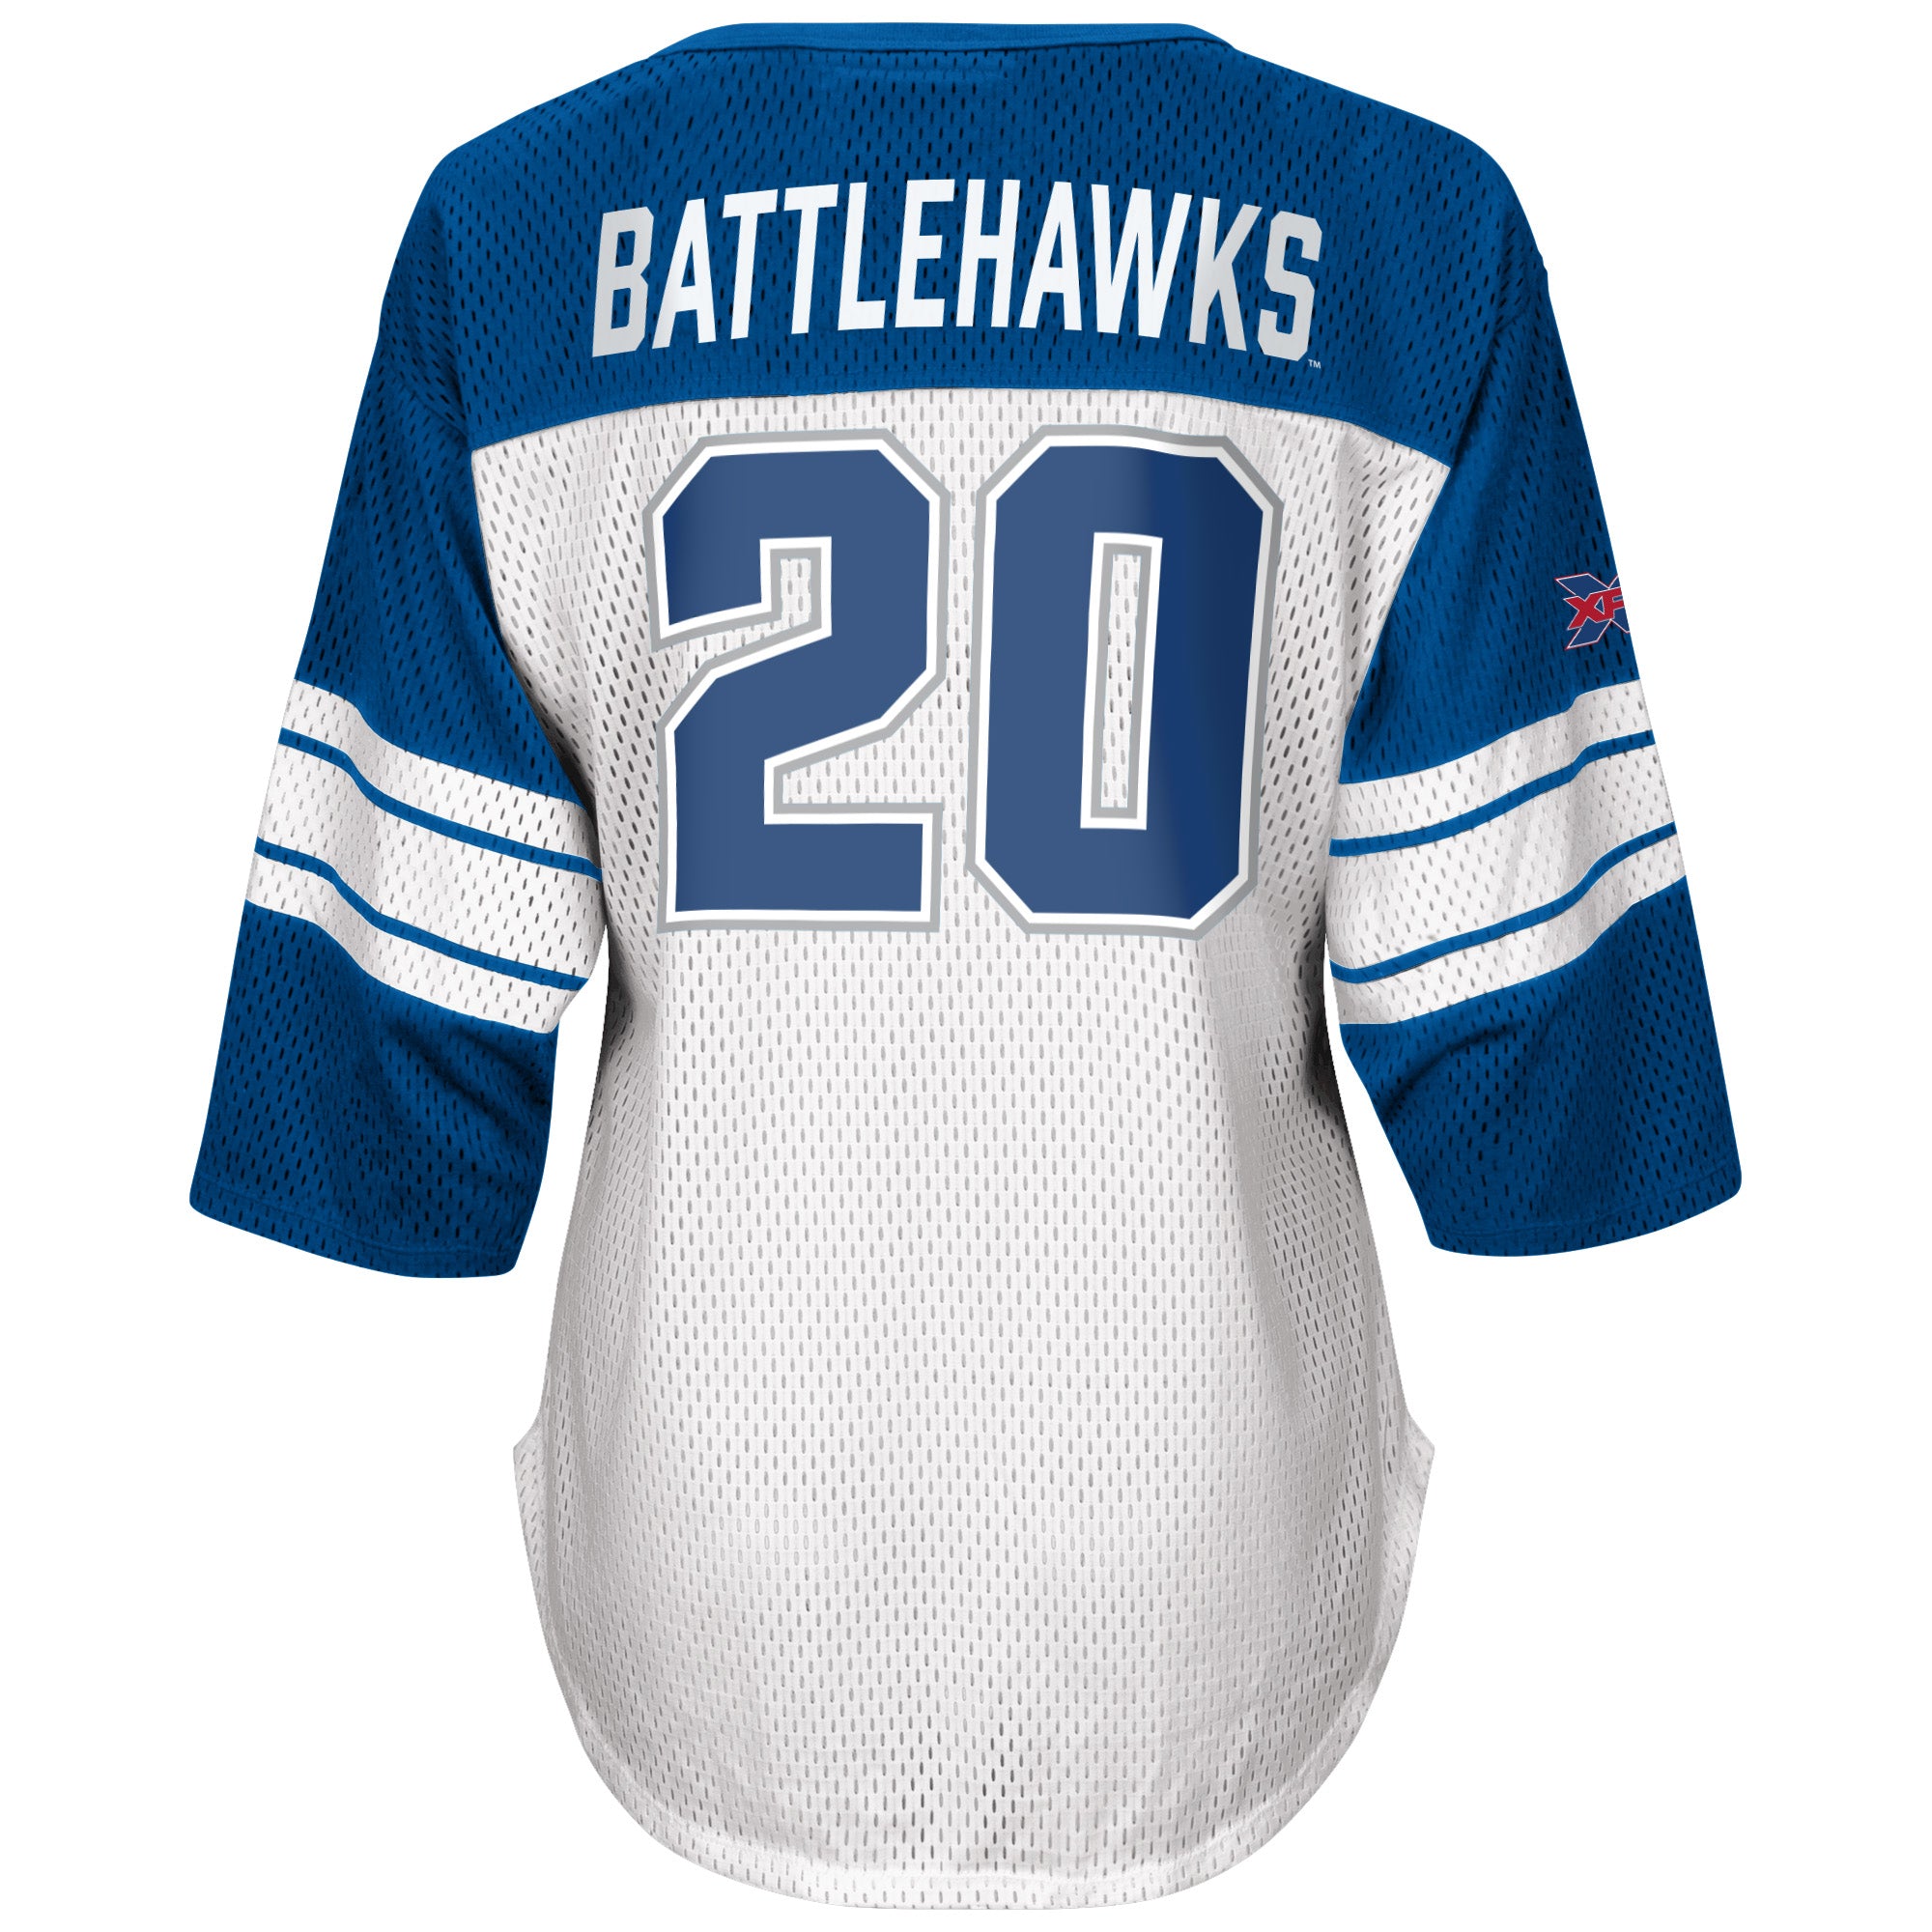 battlehawks jersey for sale